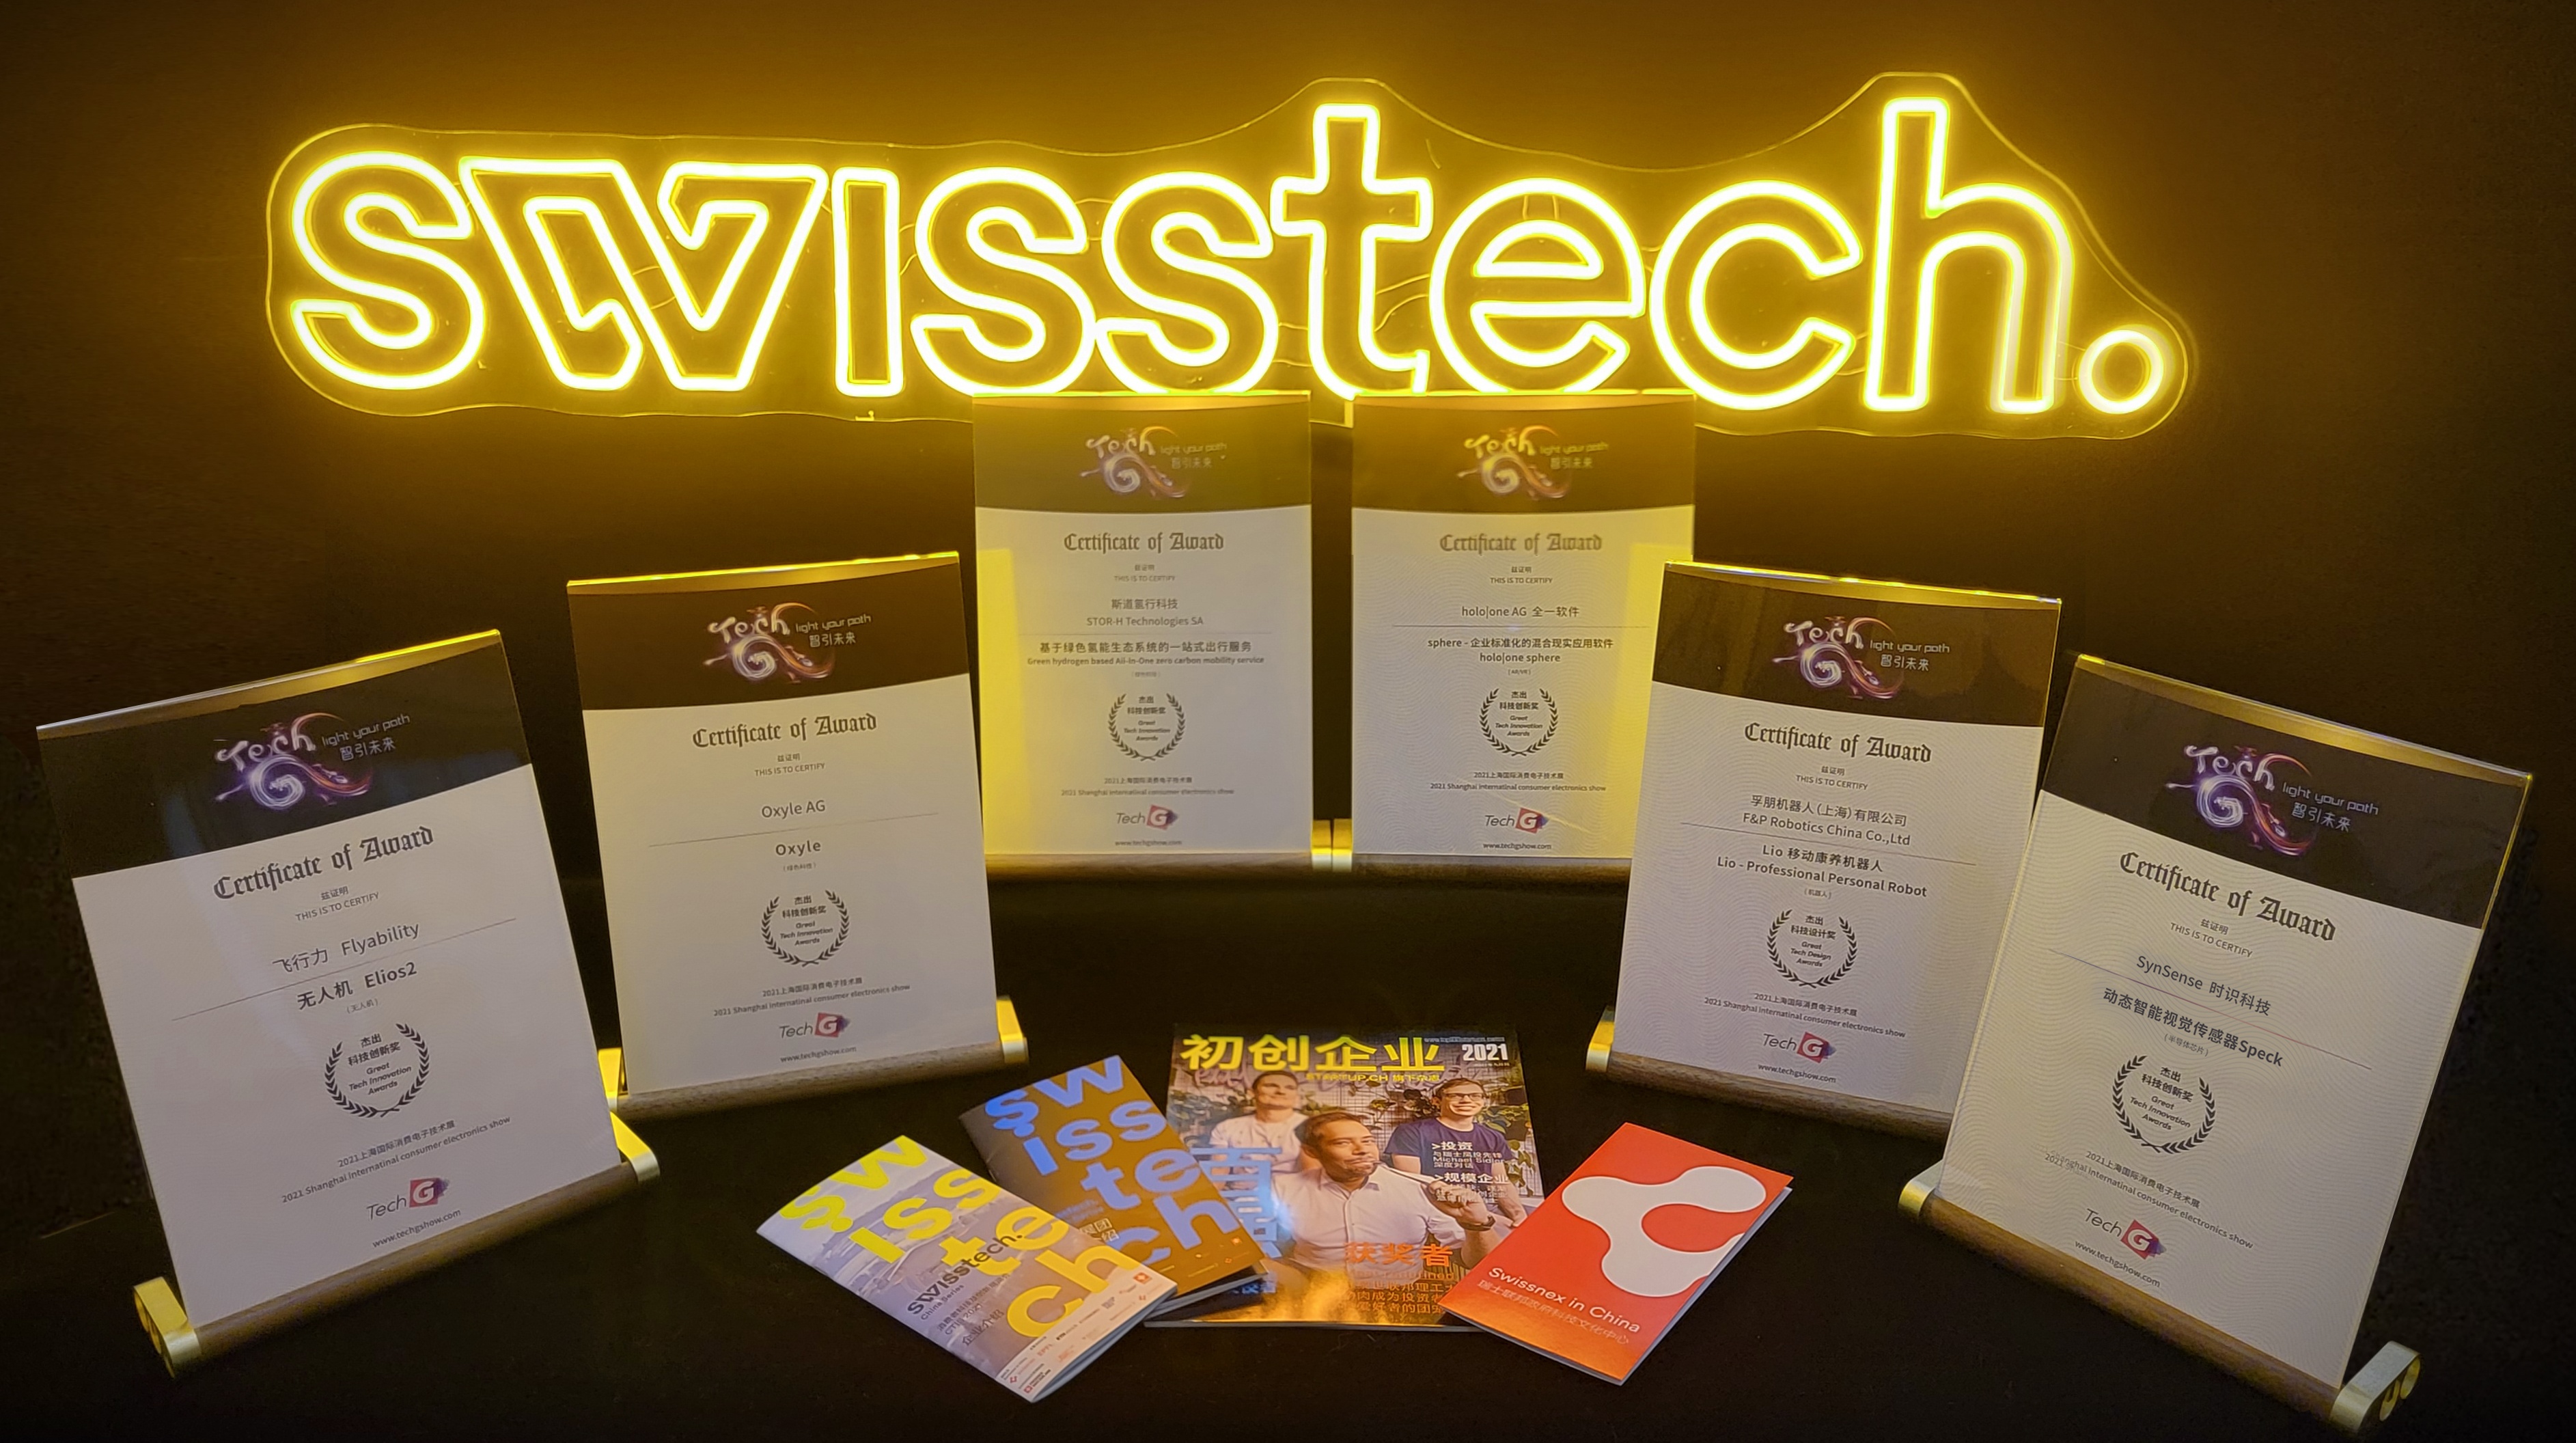 swisstech awards